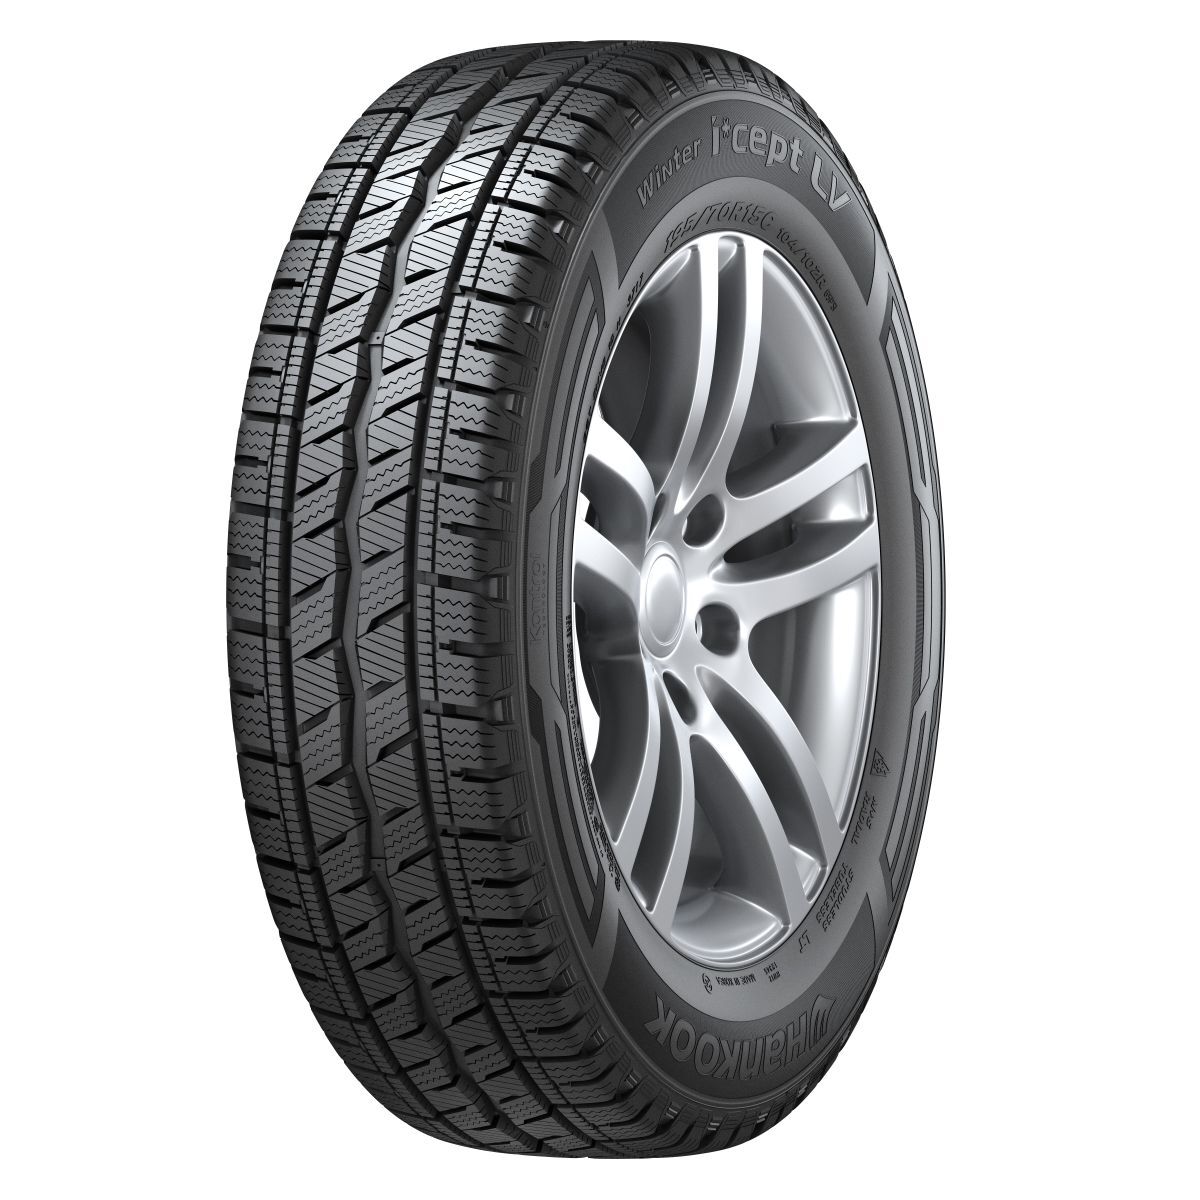 Neumáticos de invierno HANKOOK Winter I*cept LV RW12 215/60R16C, 103/101T TL